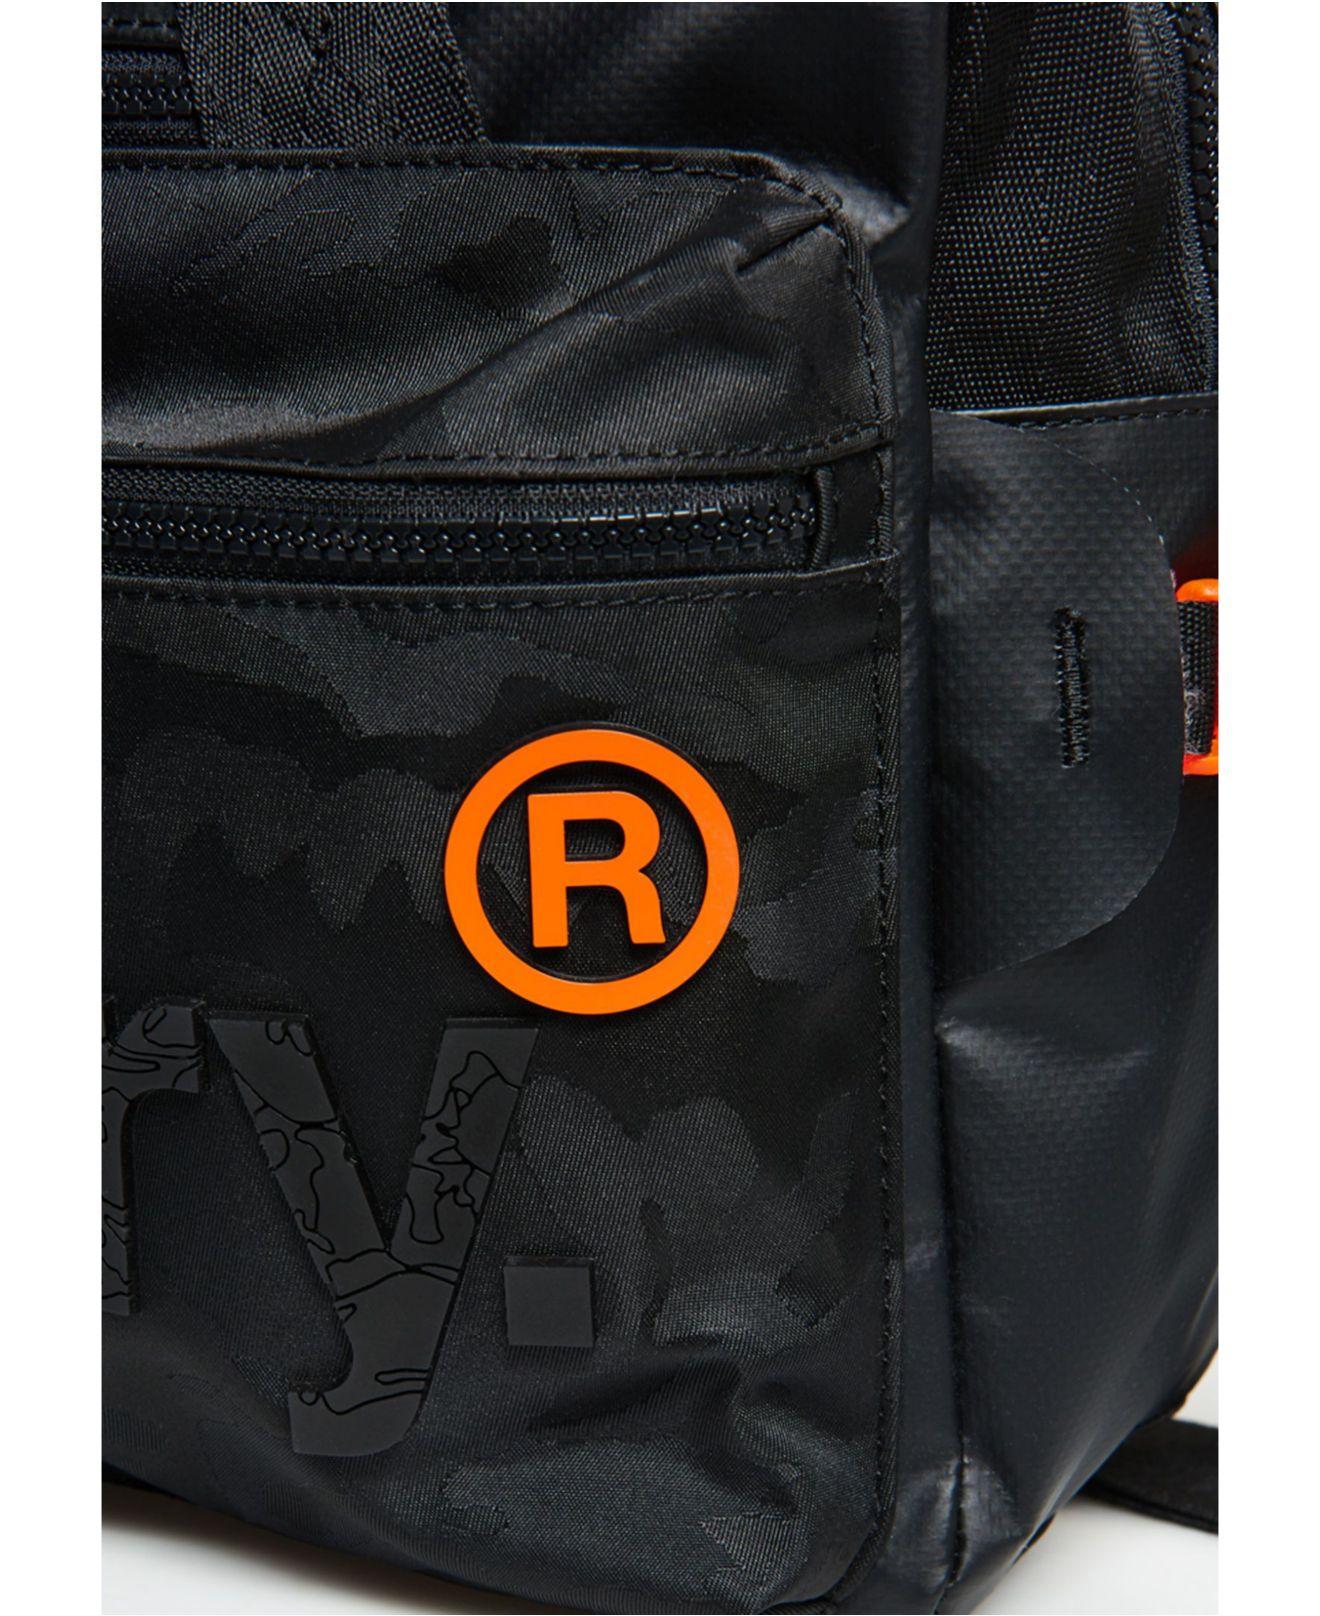 Superdry Freeloader Laptop Bag in Black for Men - Lyst